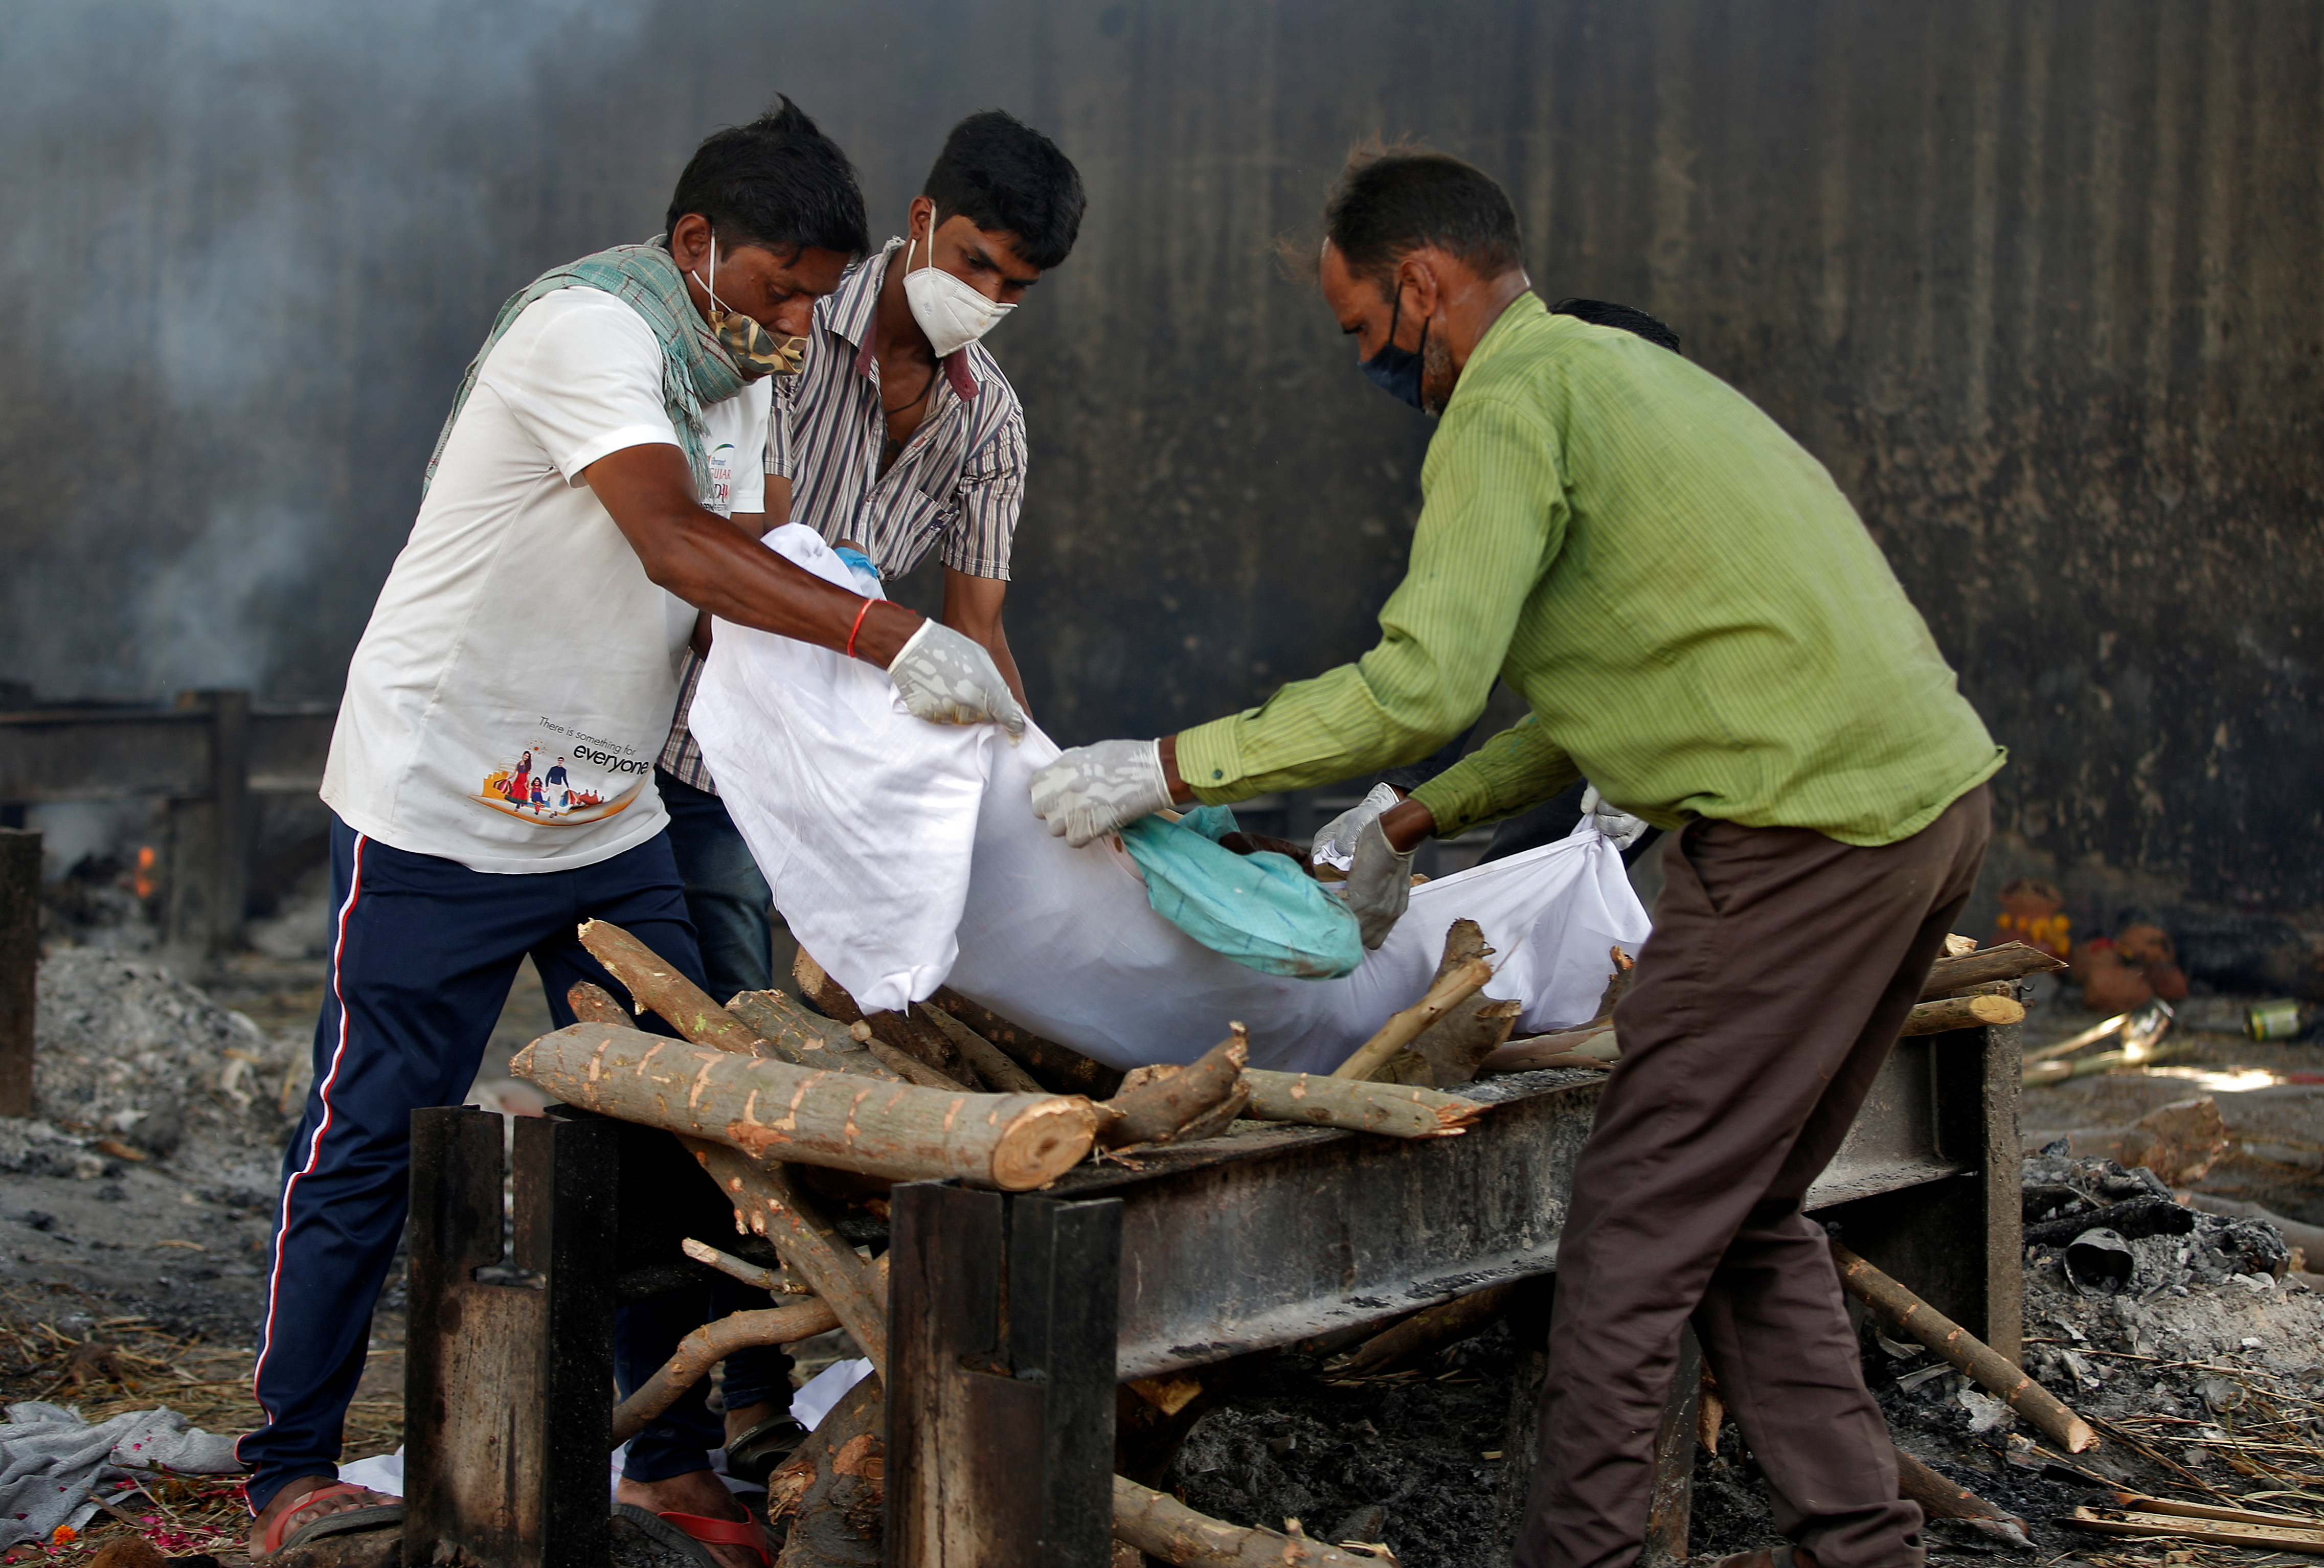 Familiares llevan el cuerpo de un hombre, que murió a causa de la enfermedad del coronavirus (COVID-19), en un crematorio en Ahmedabad, India, el 22 de abril de 2021 (Reuters)